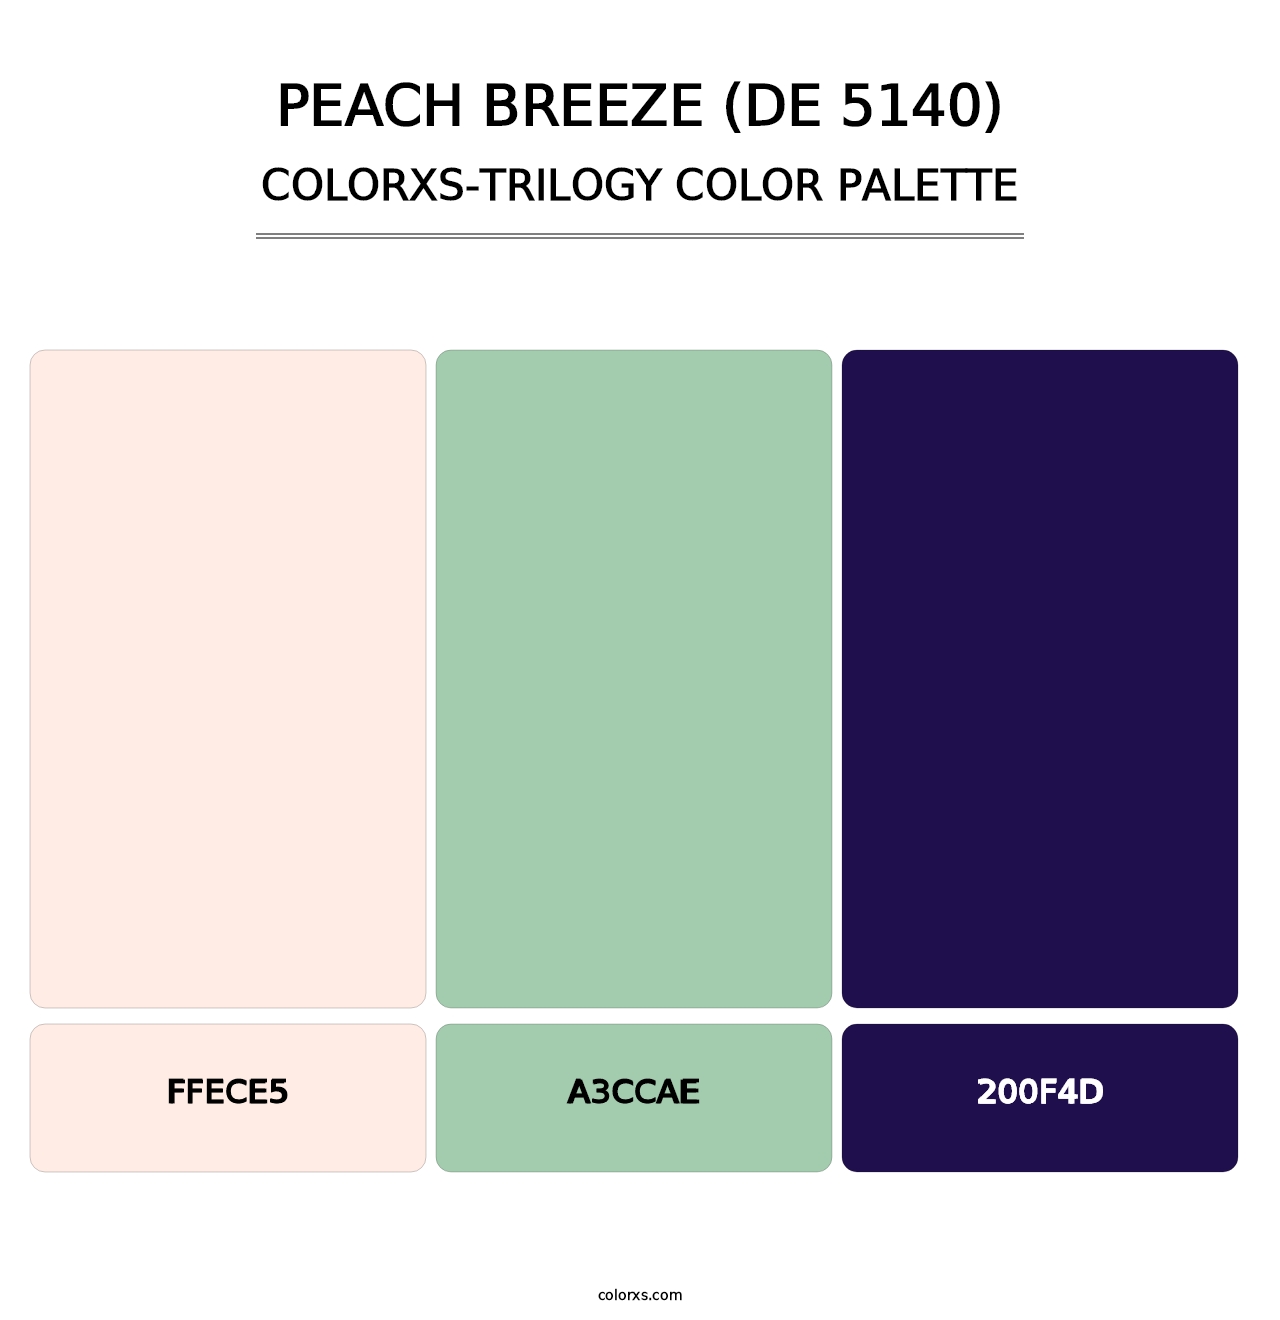 Peach Breeze (DE 5140) - Colorxs Trilogy Palette